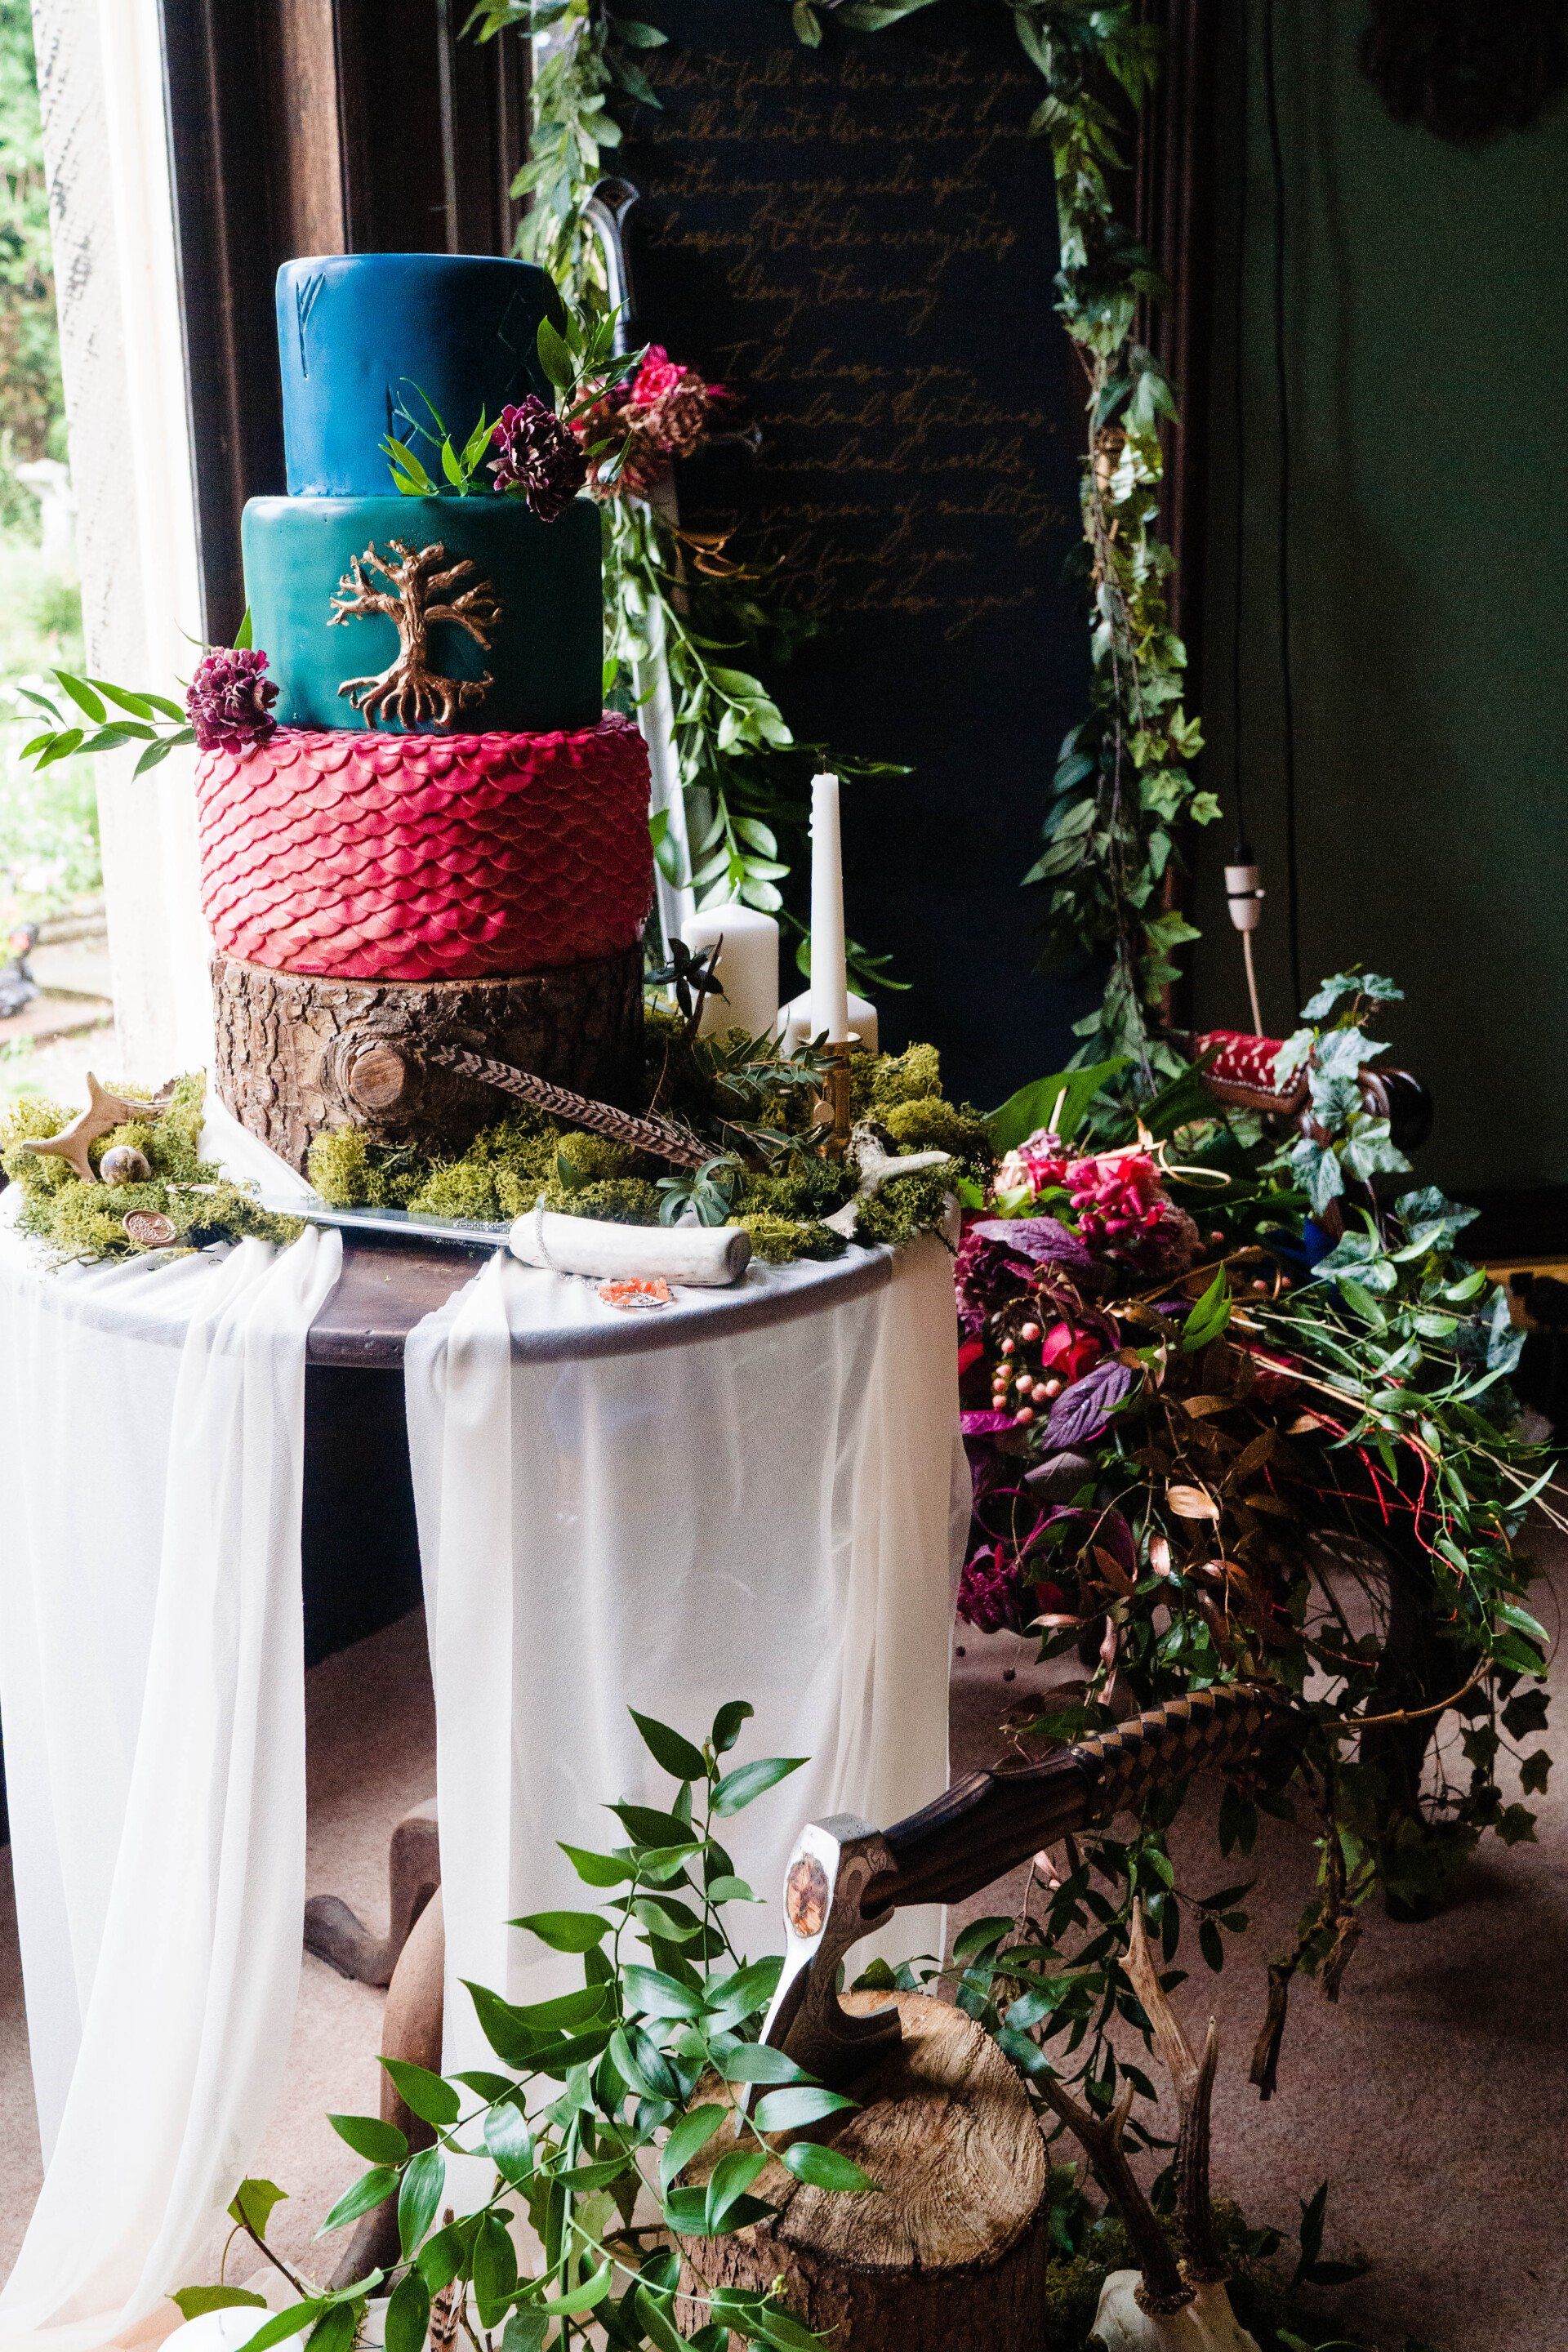 Viking wedding cake florals